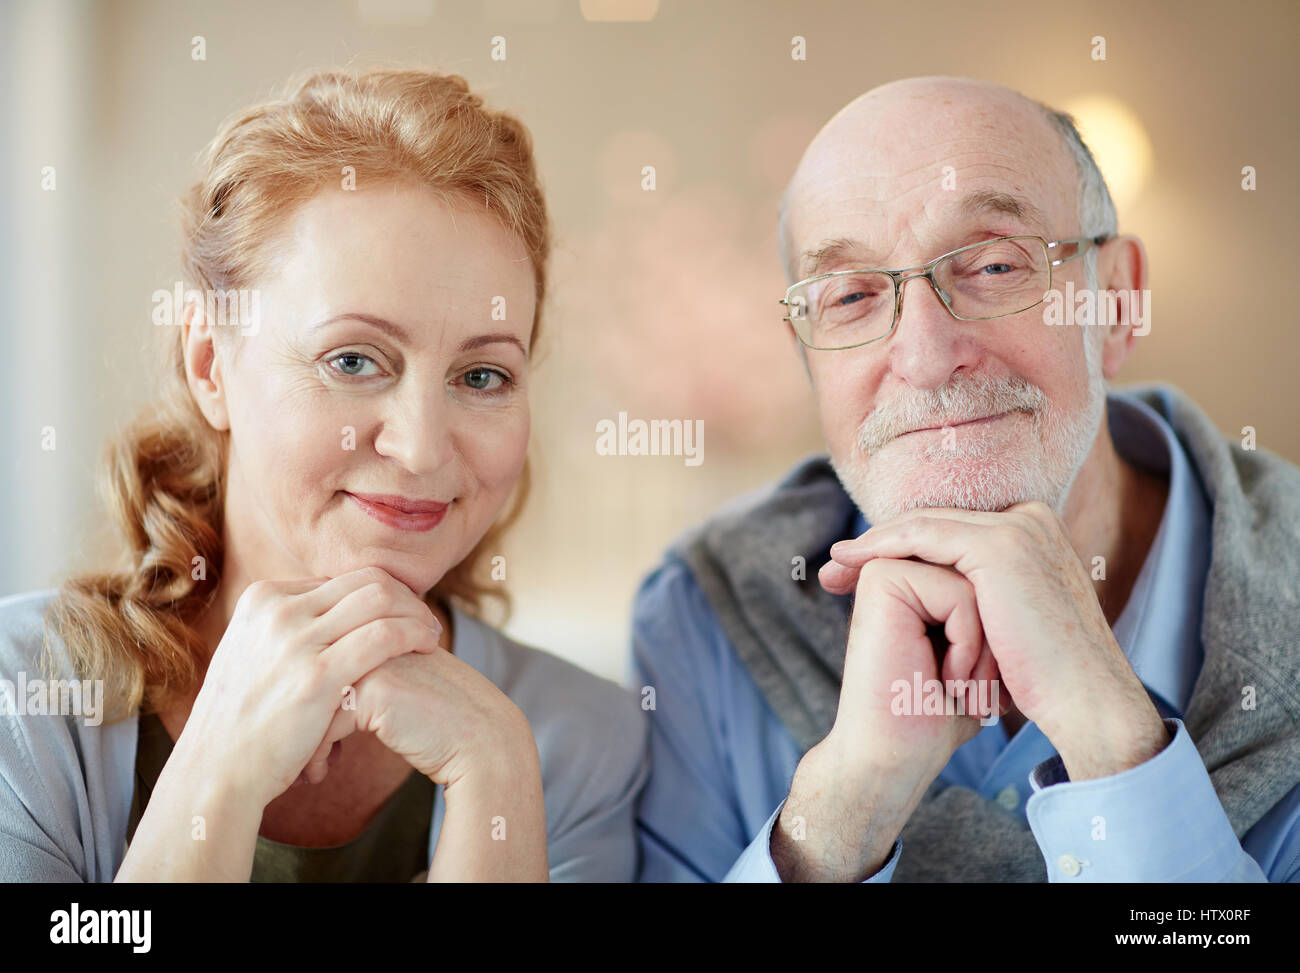 Porträt von nett lächelnd älteres paar zu Hause, graue dunkelhaarigen Mann und elegante ältere Frau Blick in die Kamera ruht Kopf auf Händen Stockfoto